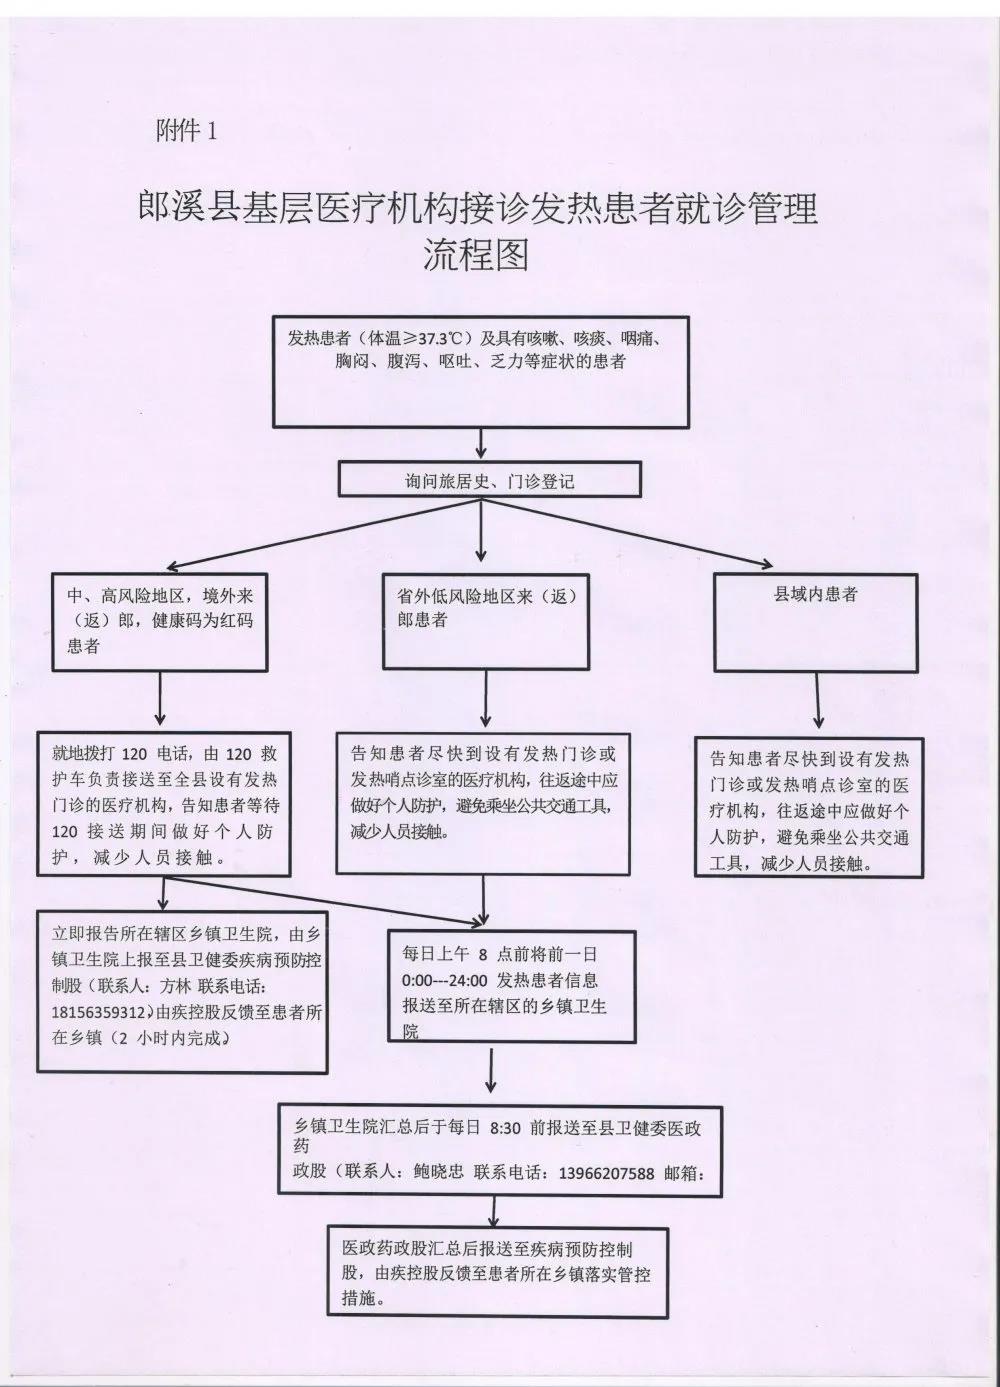 郎溪县基层医疗机构接诊发热患者就诊管理流程图